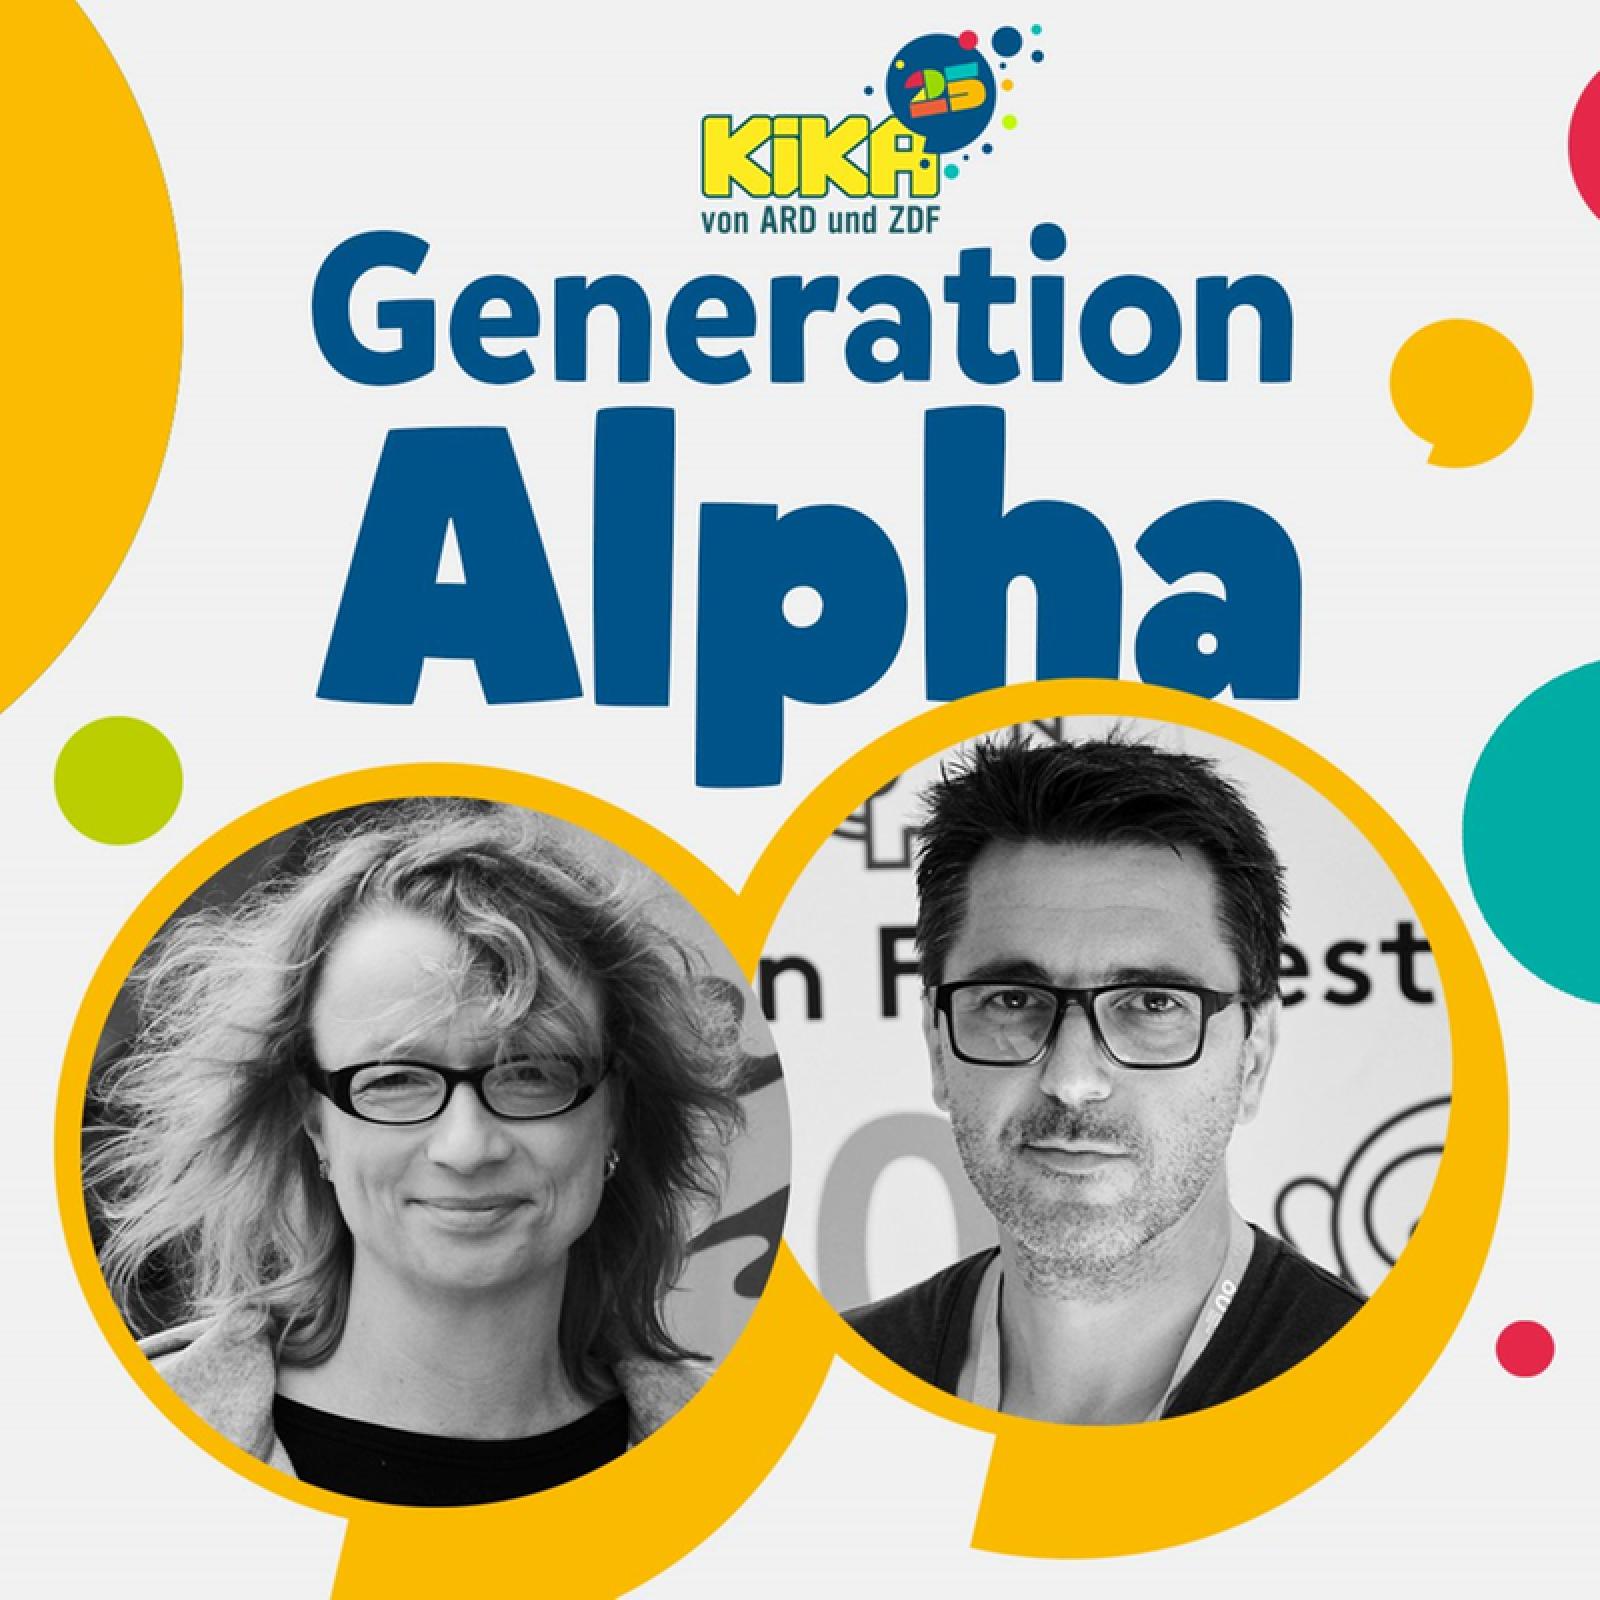 Episode 15: Ist Kino überhaupt noch etwas für die Generation Alpha? Margret Albers und Alexandre Dupont-Geisselmann sprechen mit Daniel Fiene über die Zukunft des Kinderkinos.